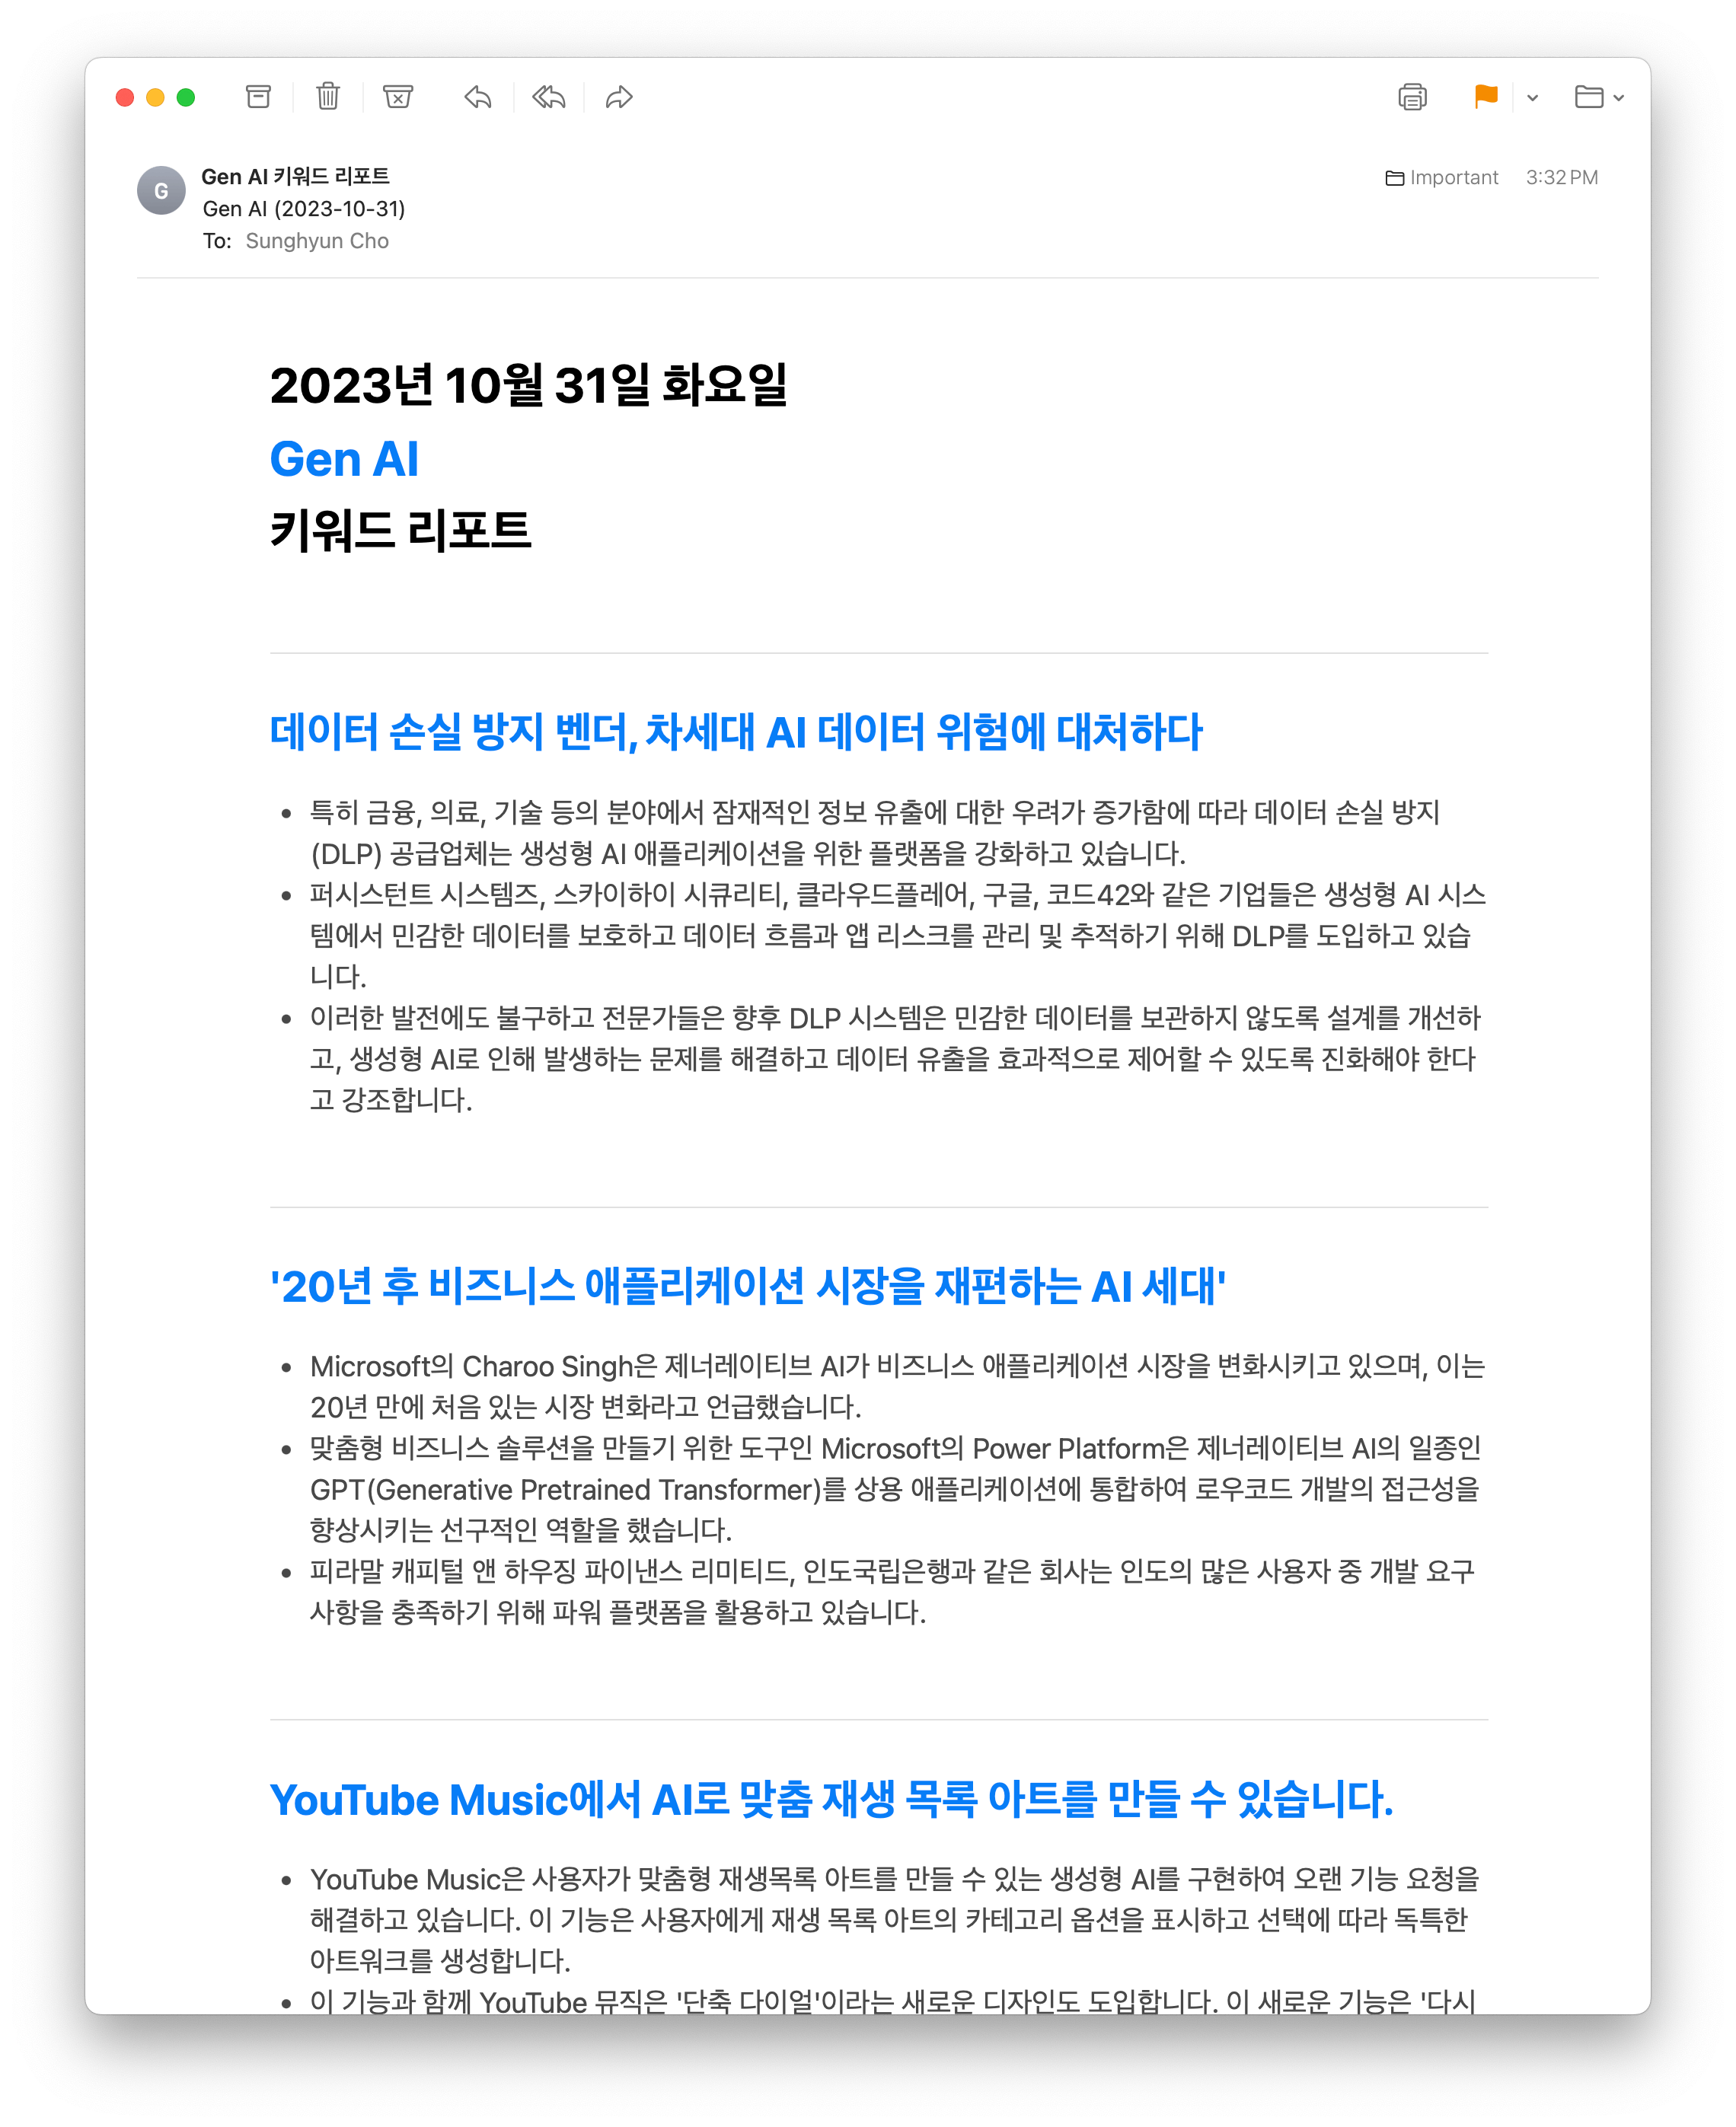 Subscribed to Gen AI, language set to Korean